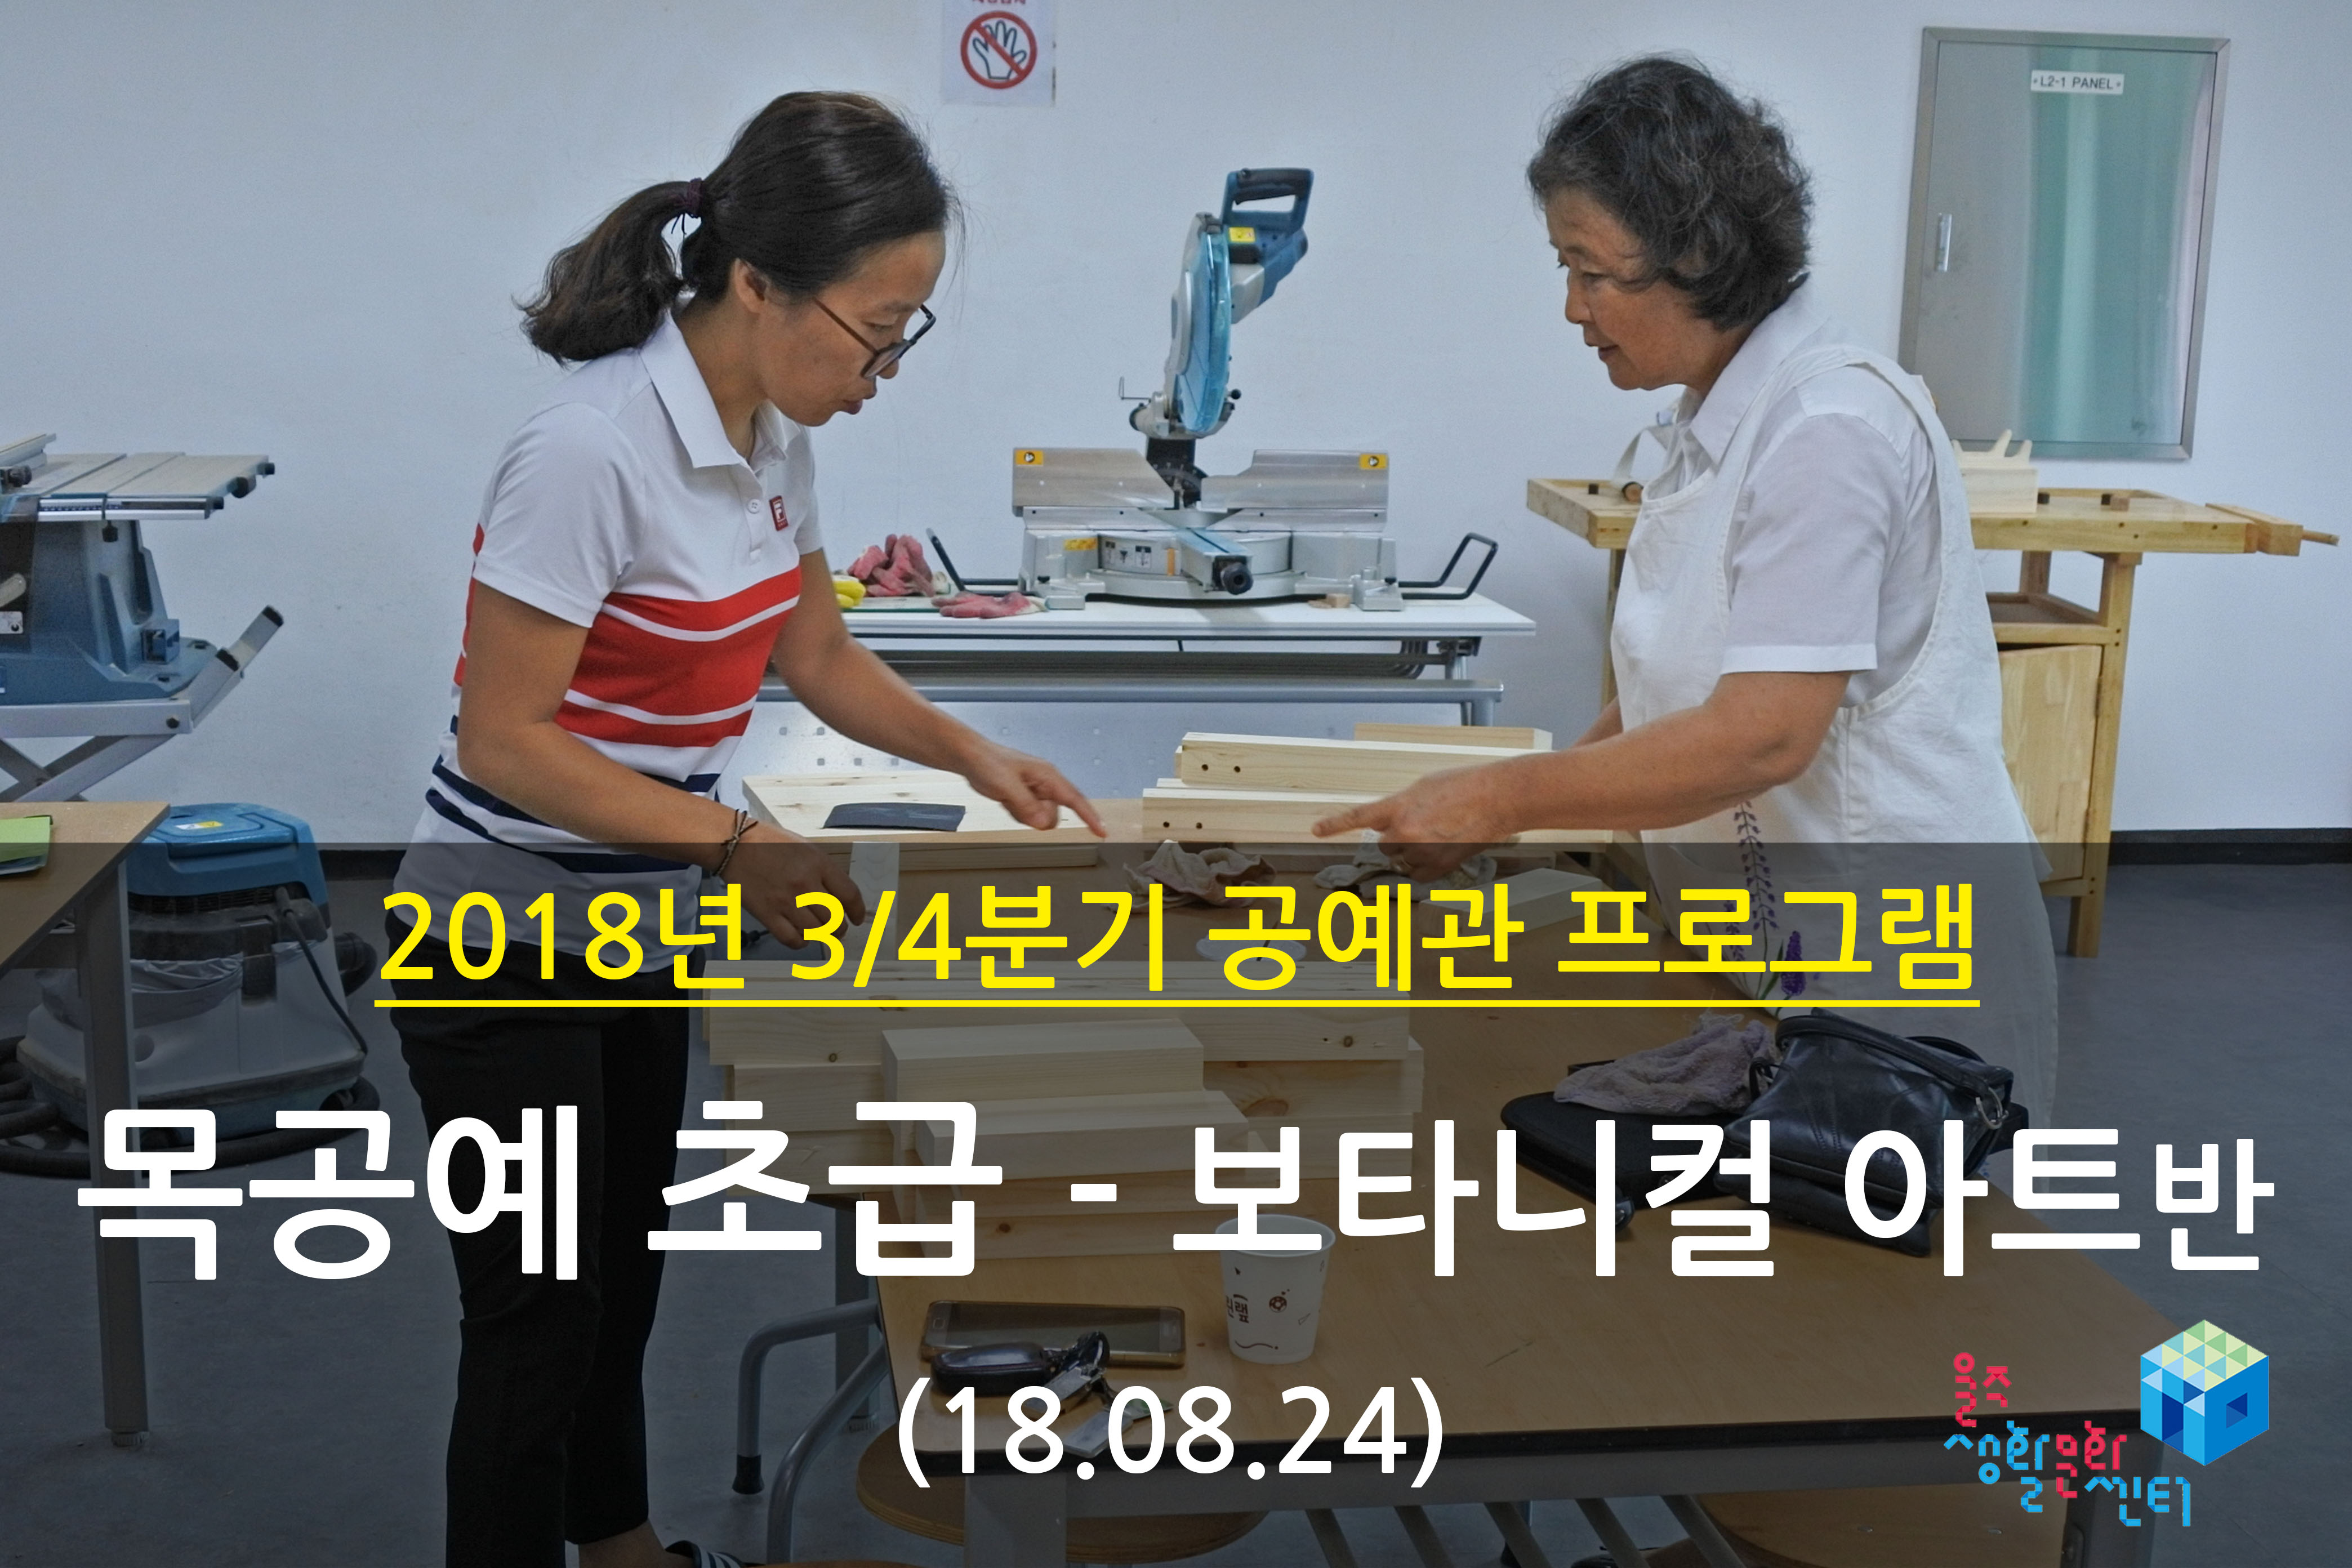 2018.08.24 _ 목공예 초급 - 보타니컬 아트반 _ 3/4분기 7주차 수업